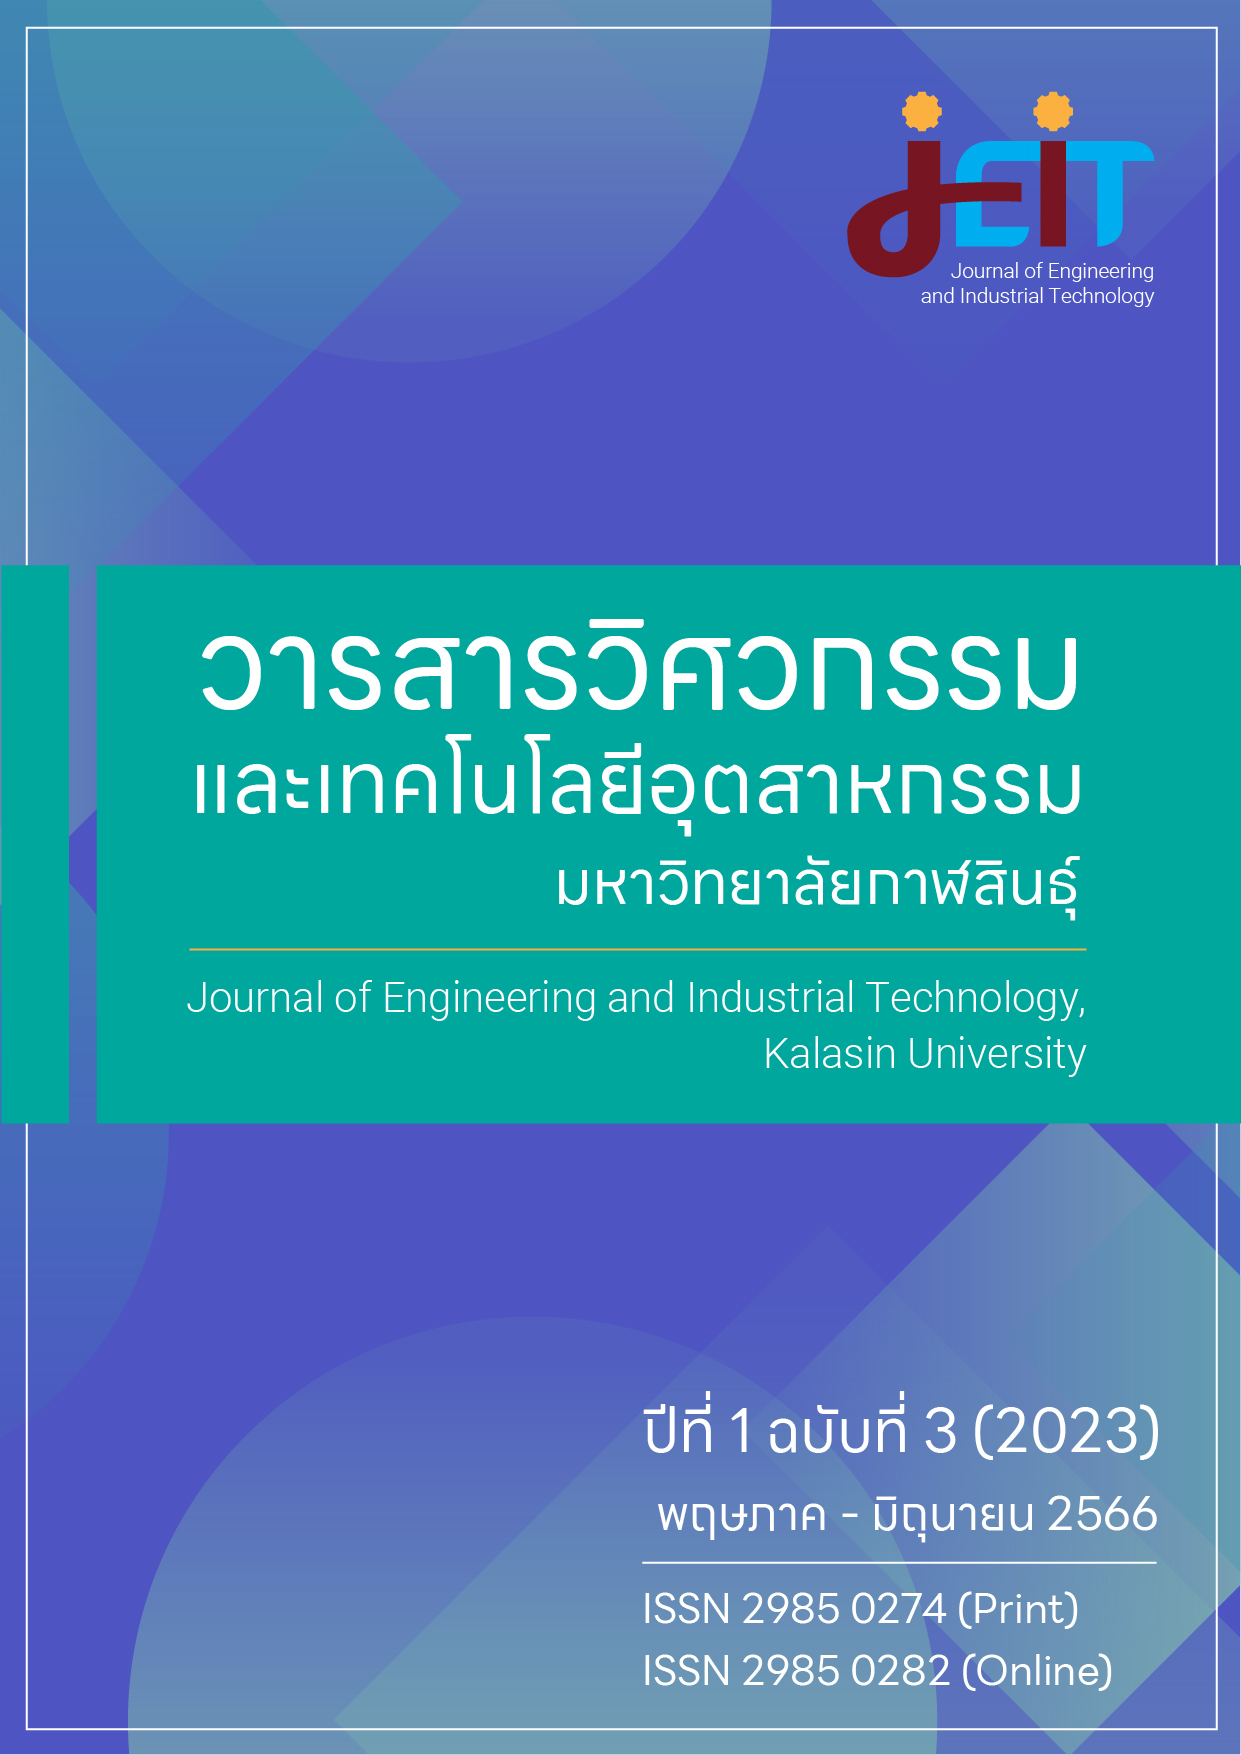 					ดู ปีที่ 1 ฉบับที่ 3 (2023): วารสารวิศวกรรมและเทคโนโลยีอุตสาหกรรม มหาวิทยาลัยกาฬสินธุ์ ปีที่ 1 ฉบับที่ 3 (พฤษภาคม - มิถุนายน 2566)
				